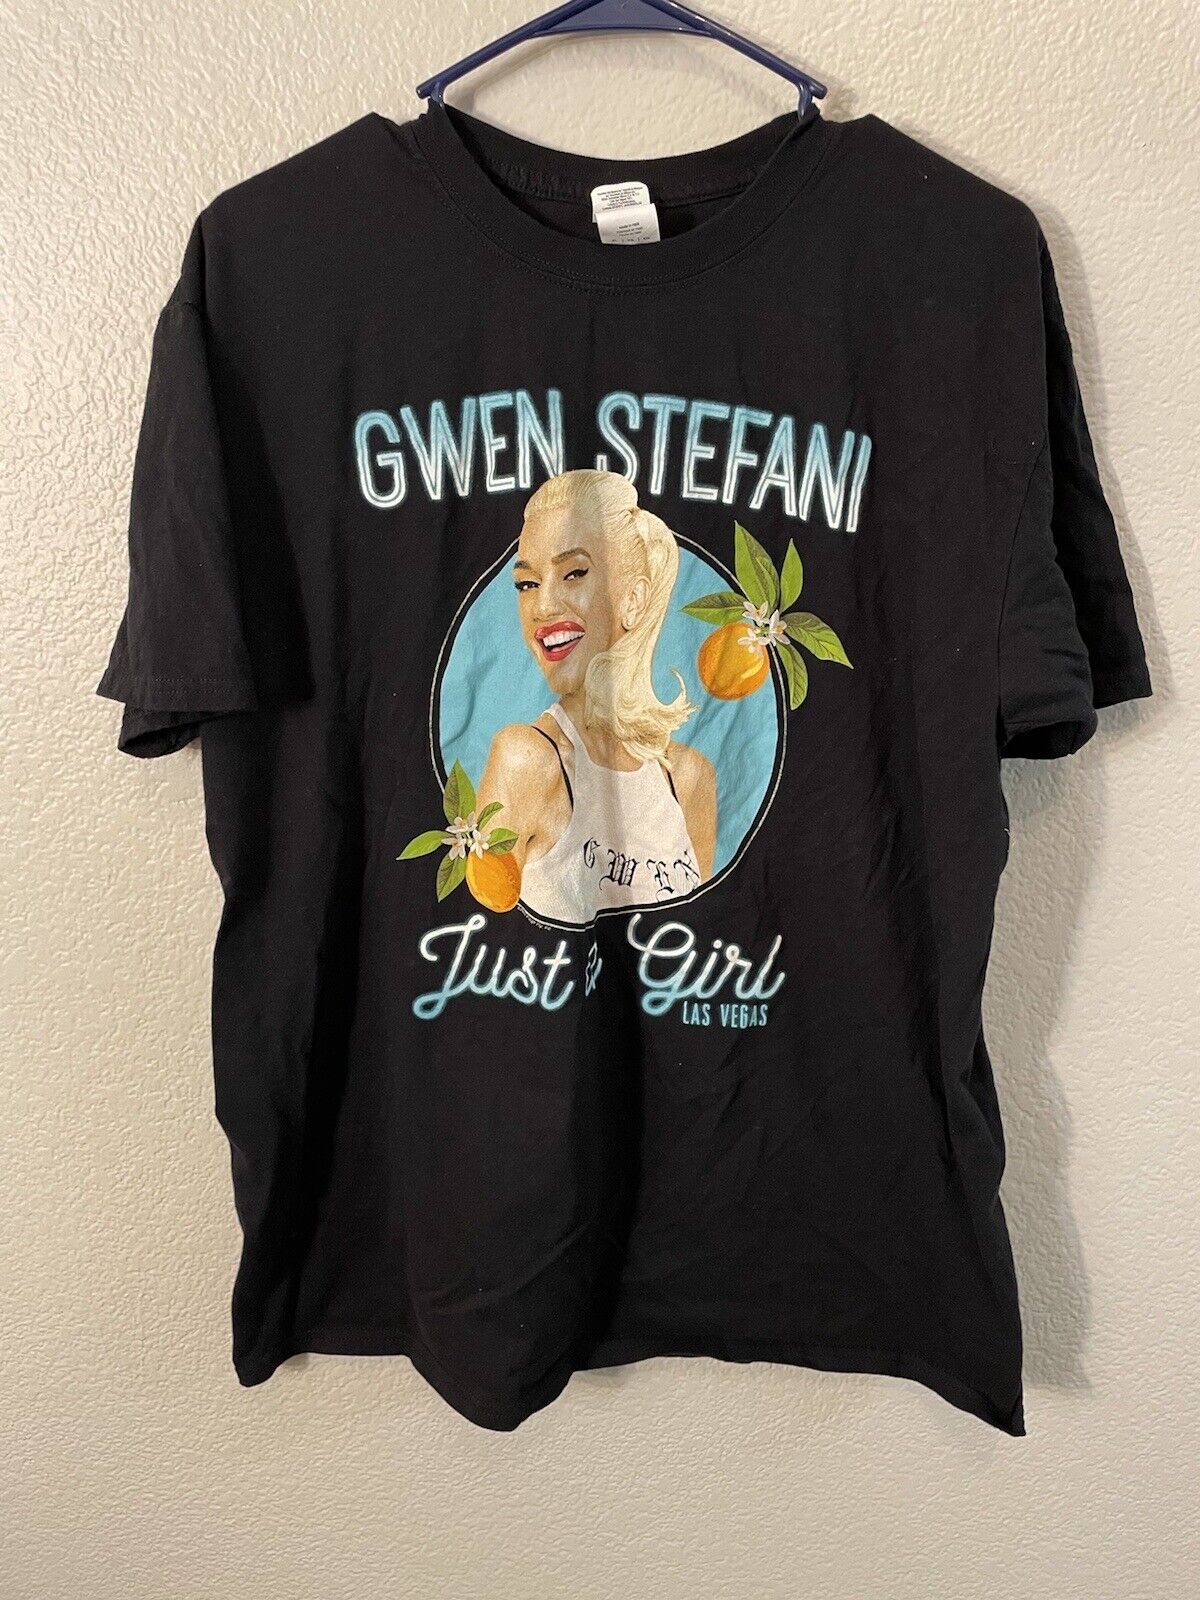 Gwen Stefani "just A Girl" Residency Program Las Vegas T-shirt Black Size Xl